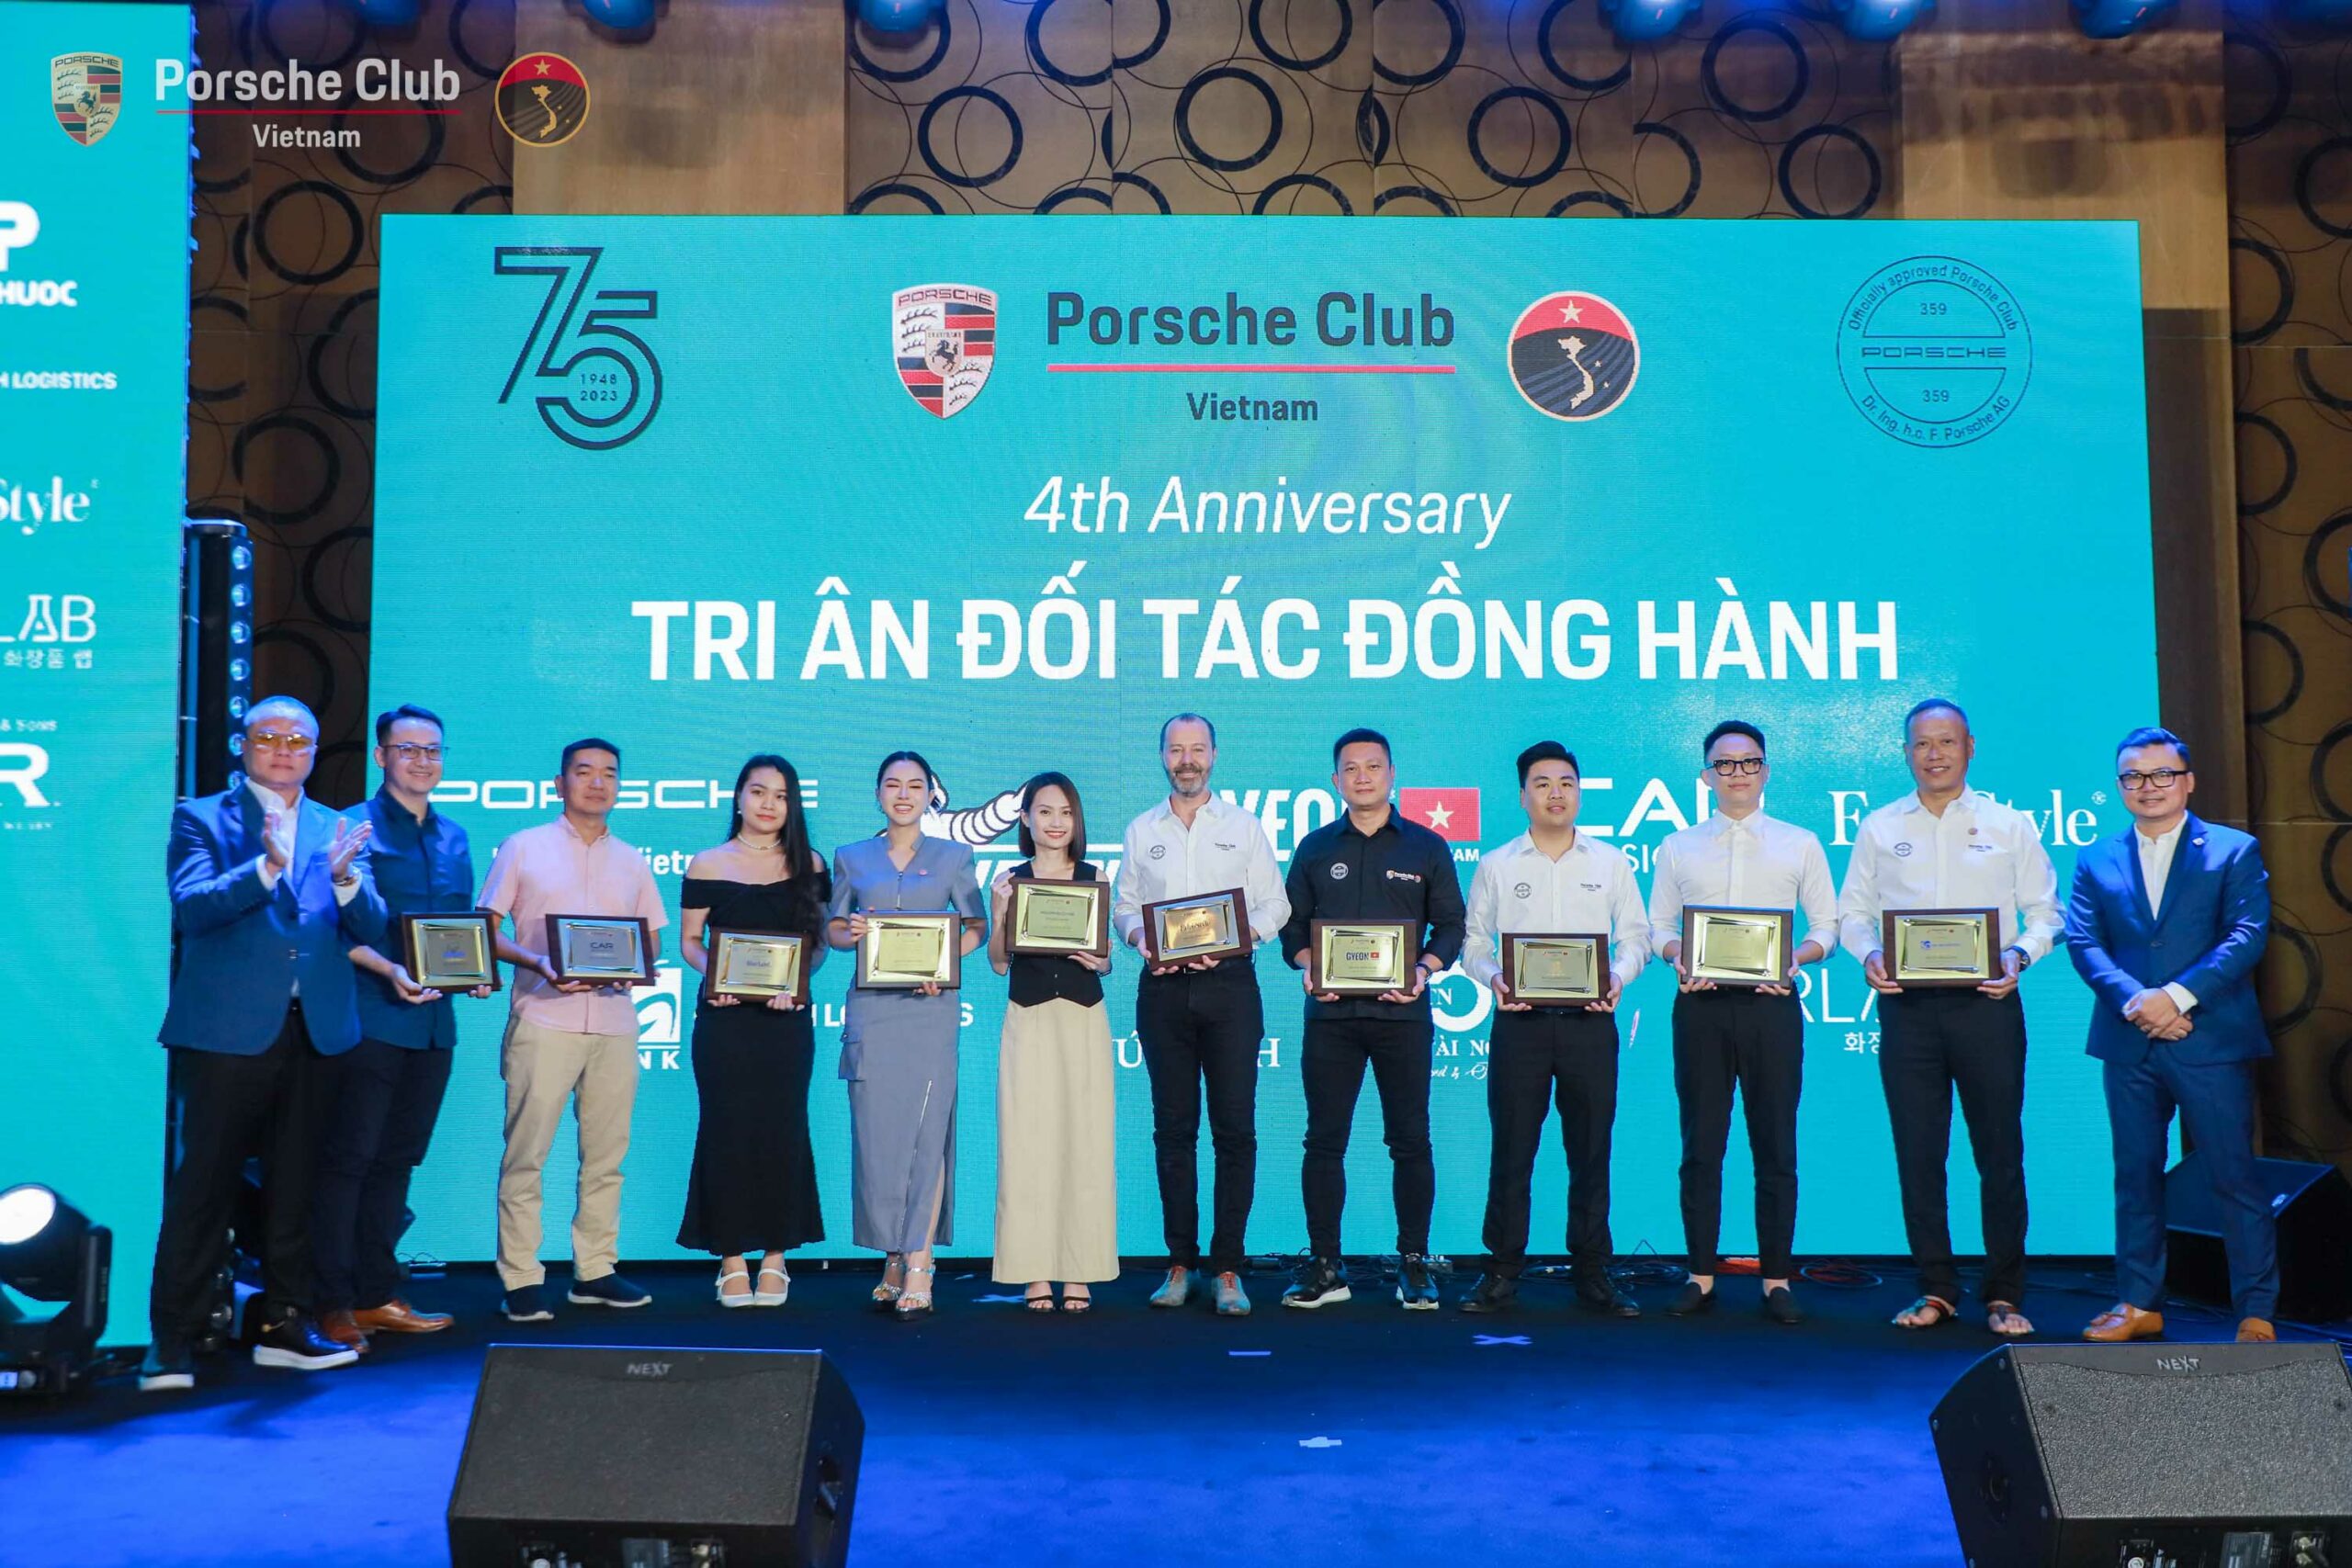 [4th Anniversary Porsche Club Vietnam] Đêm gala đặc sắc gắn kết thành viên yêu Porsche 3 miền, cùng nhau đi xa hơn